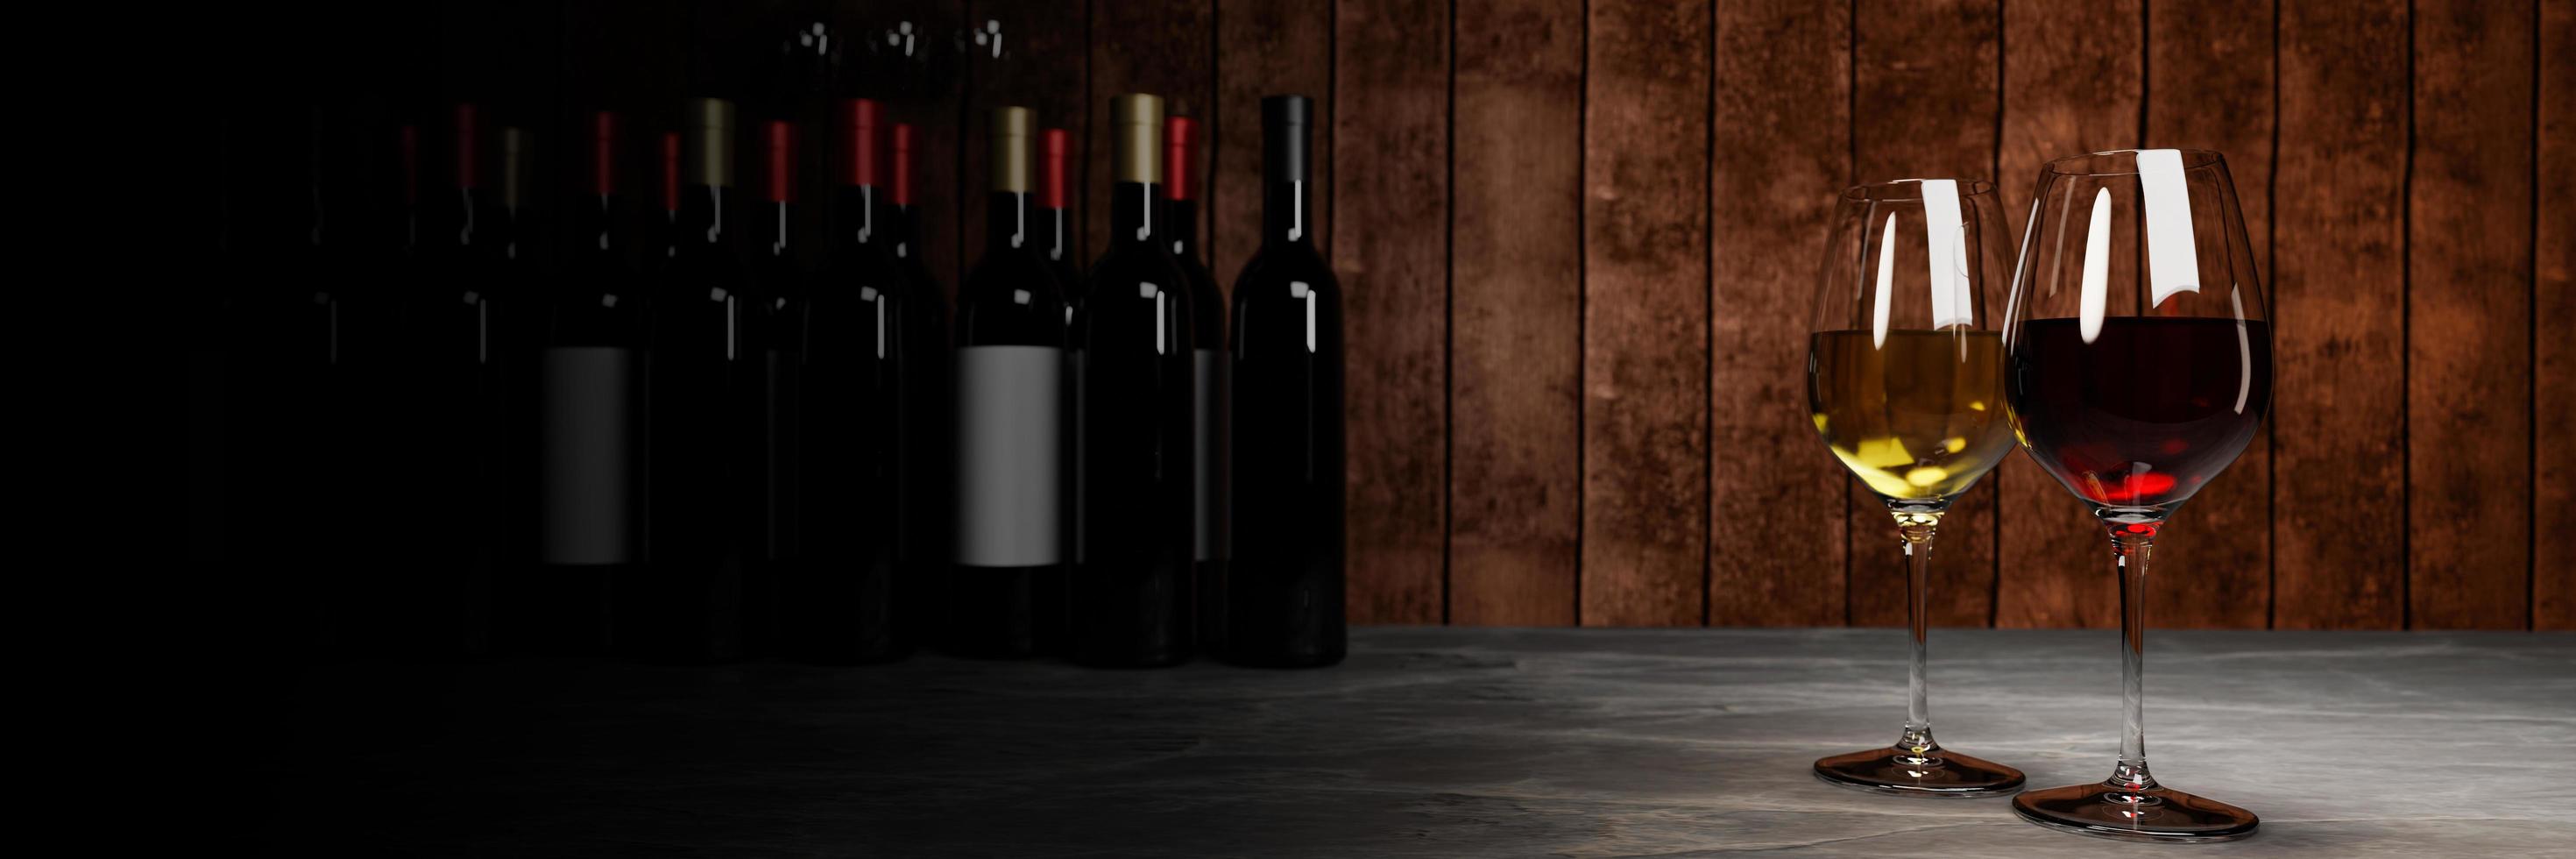 rode en witte wijn in helder glas, veel wazige wijnflesachtergronden plaatsen het op een cementvloer met een houten plankwand. het productieconcept voor het proeven van de kelder. 3D-rendering foto